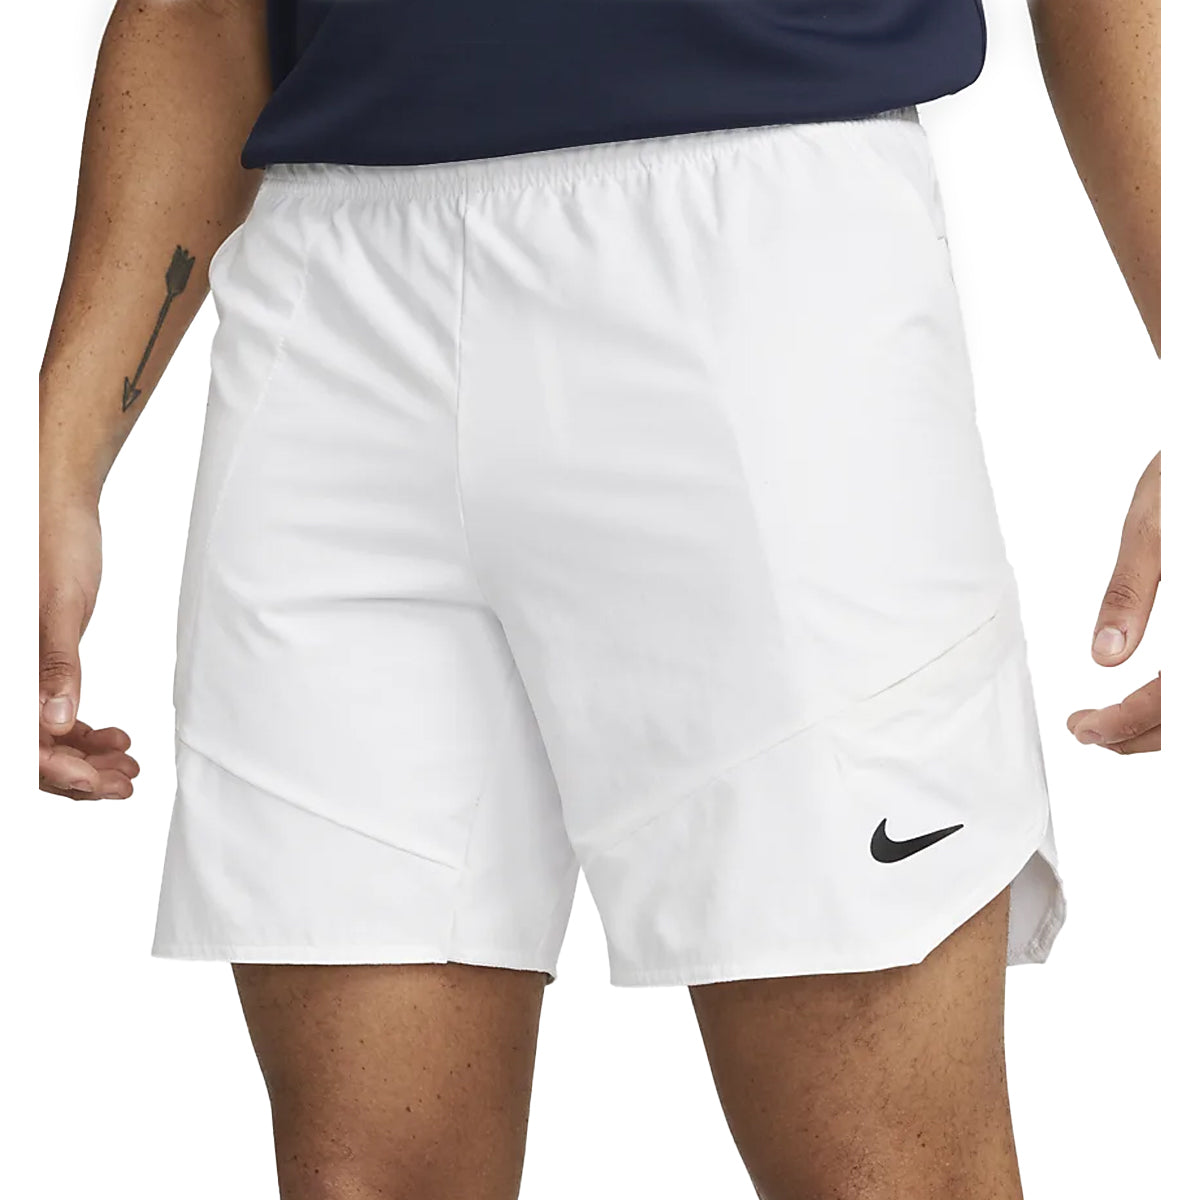 Nike Dri-Fit Advantage 7" Short (Men's) - White/Black